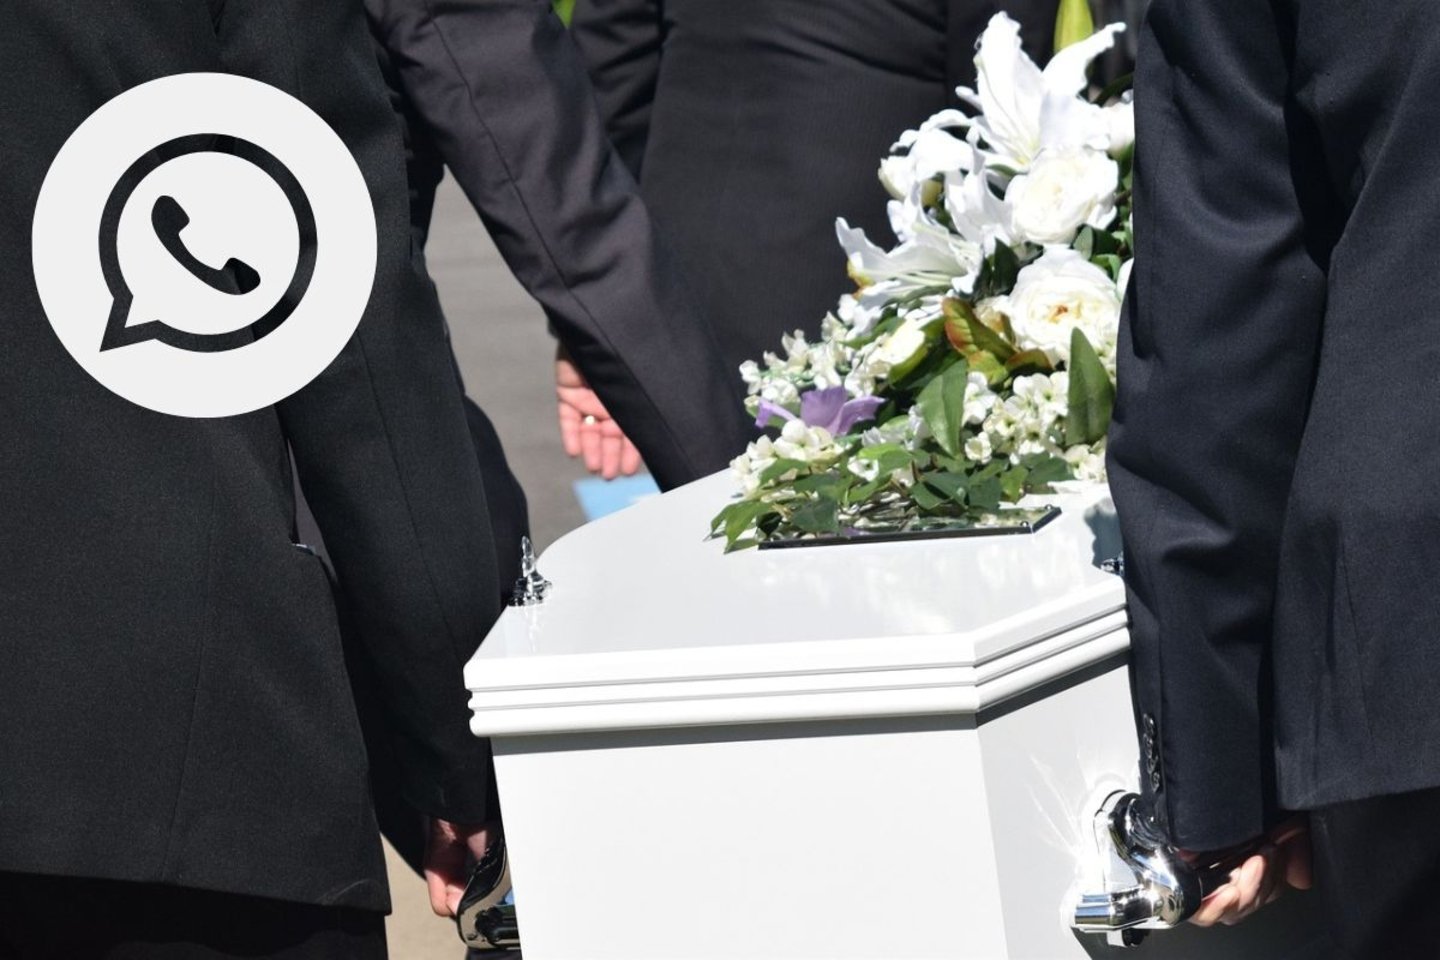 Logotipo de WhatsApp en una imagen de un entierro